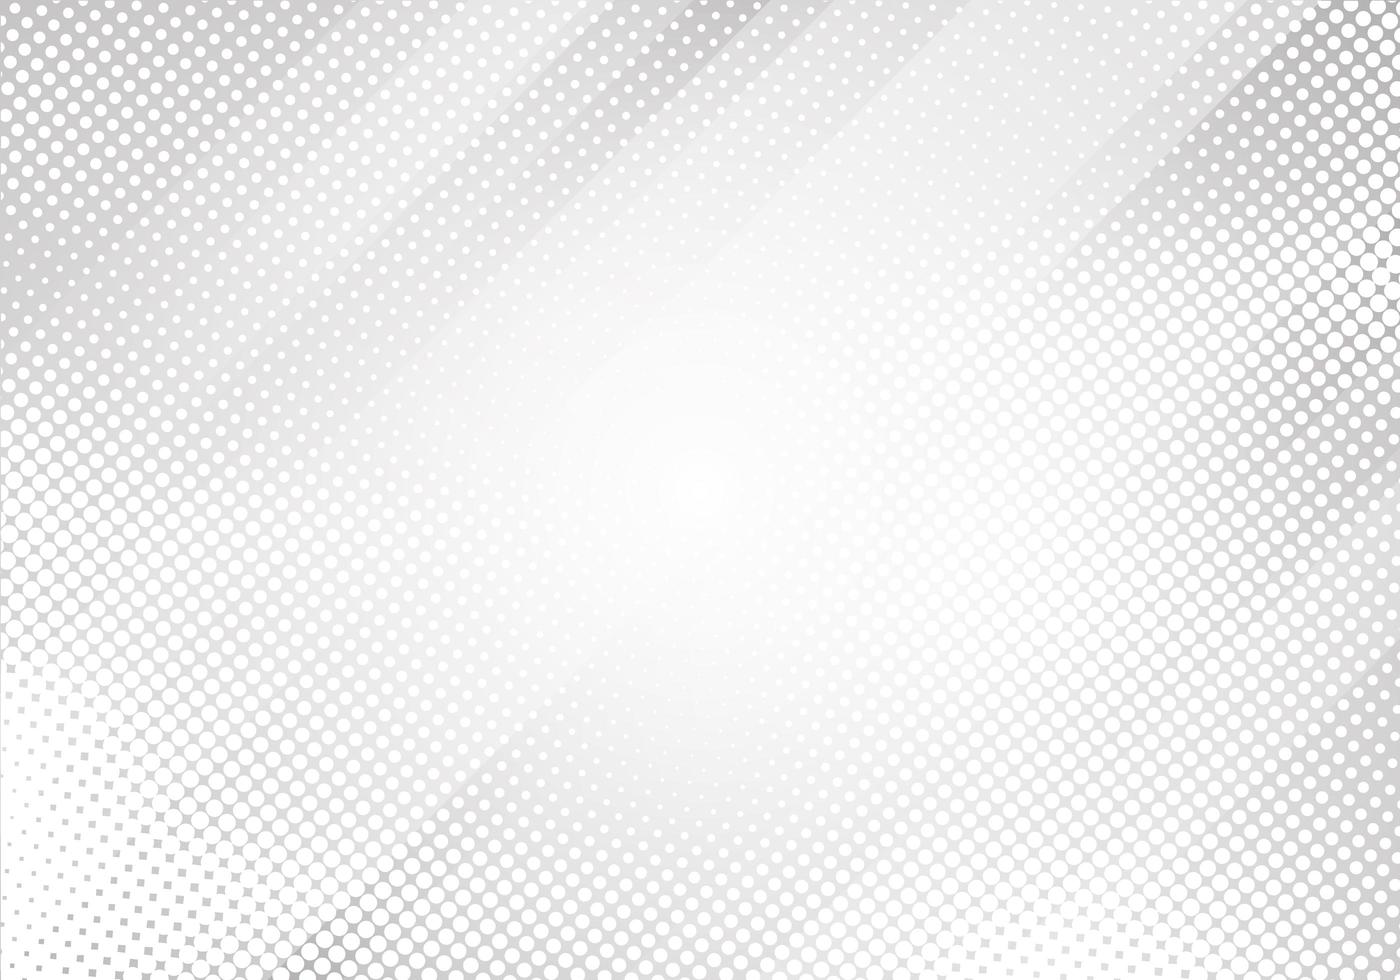 abstrato branco e cinza linhas gradientes listras fundo de meio-tom vetor